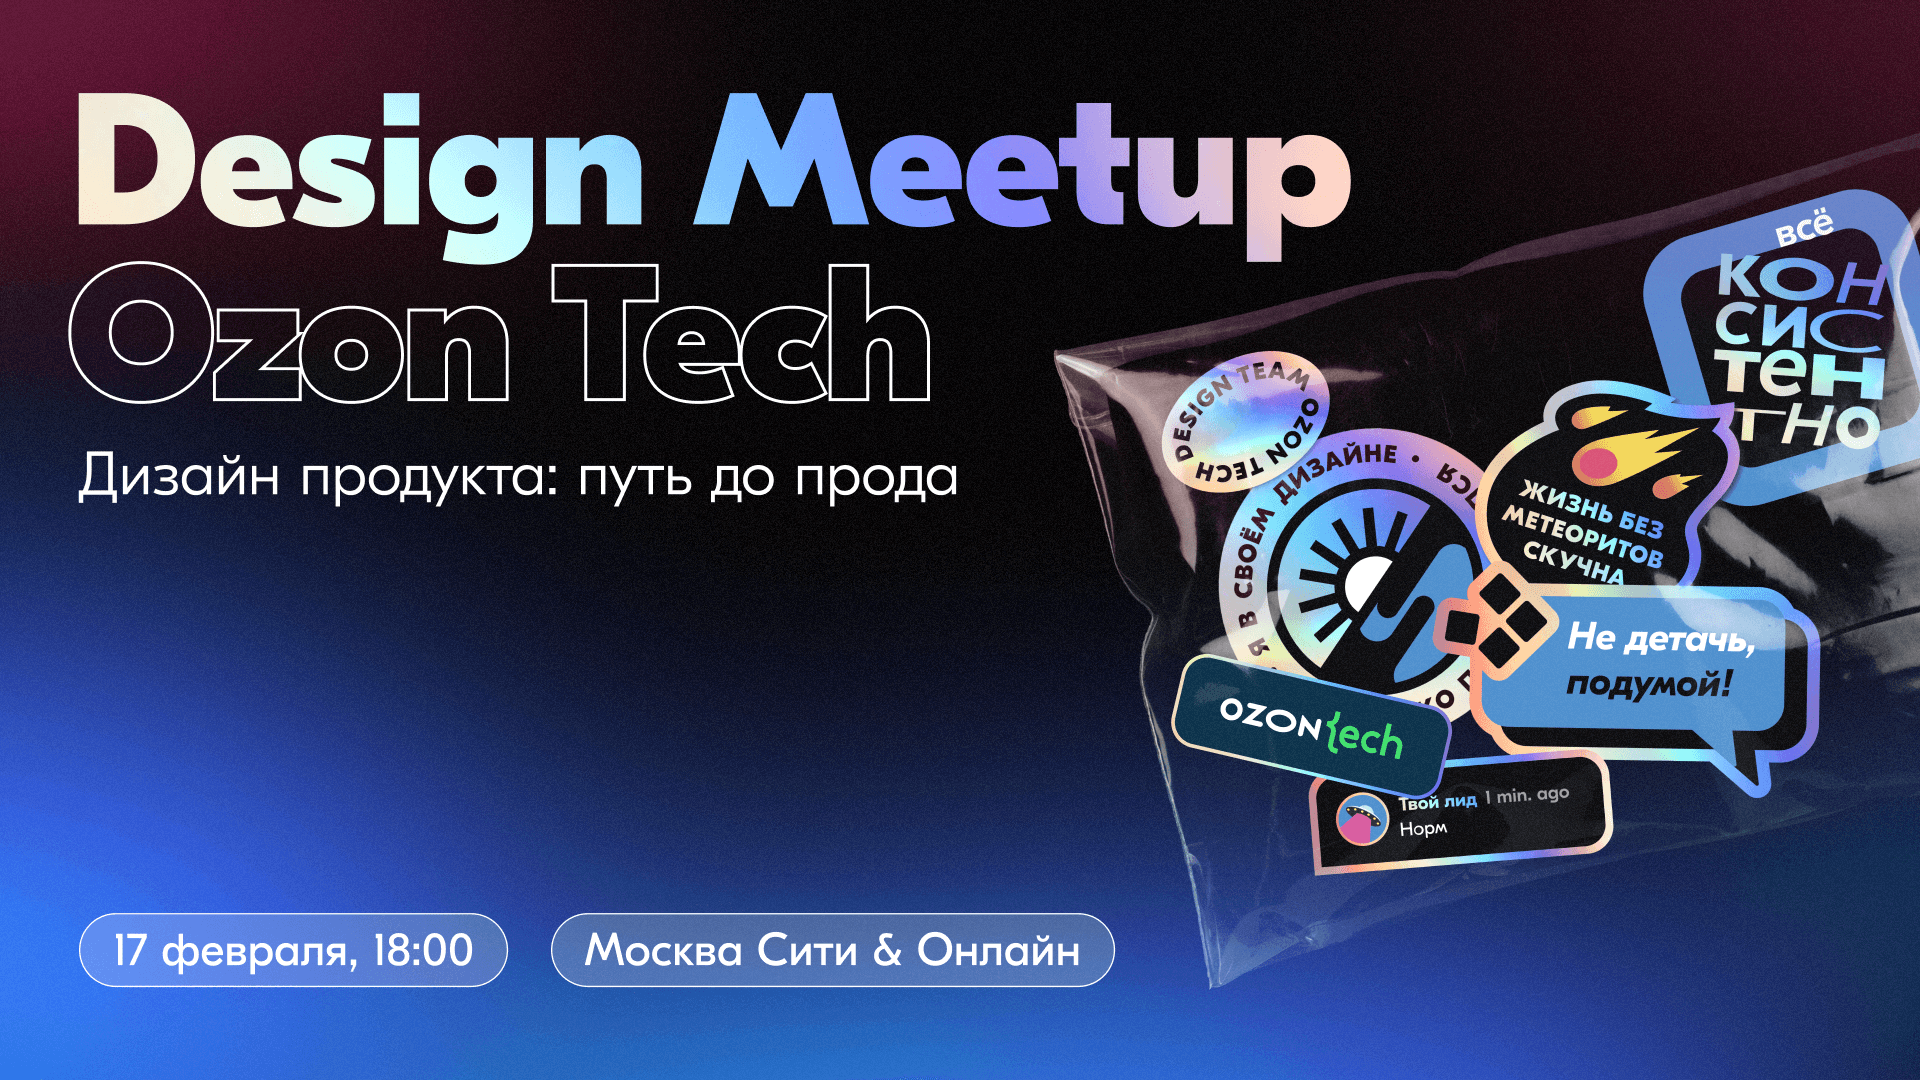 Приглашаем на Ozon Tech Community Design Meetup. Дизайн продукта: путь до прода - 1